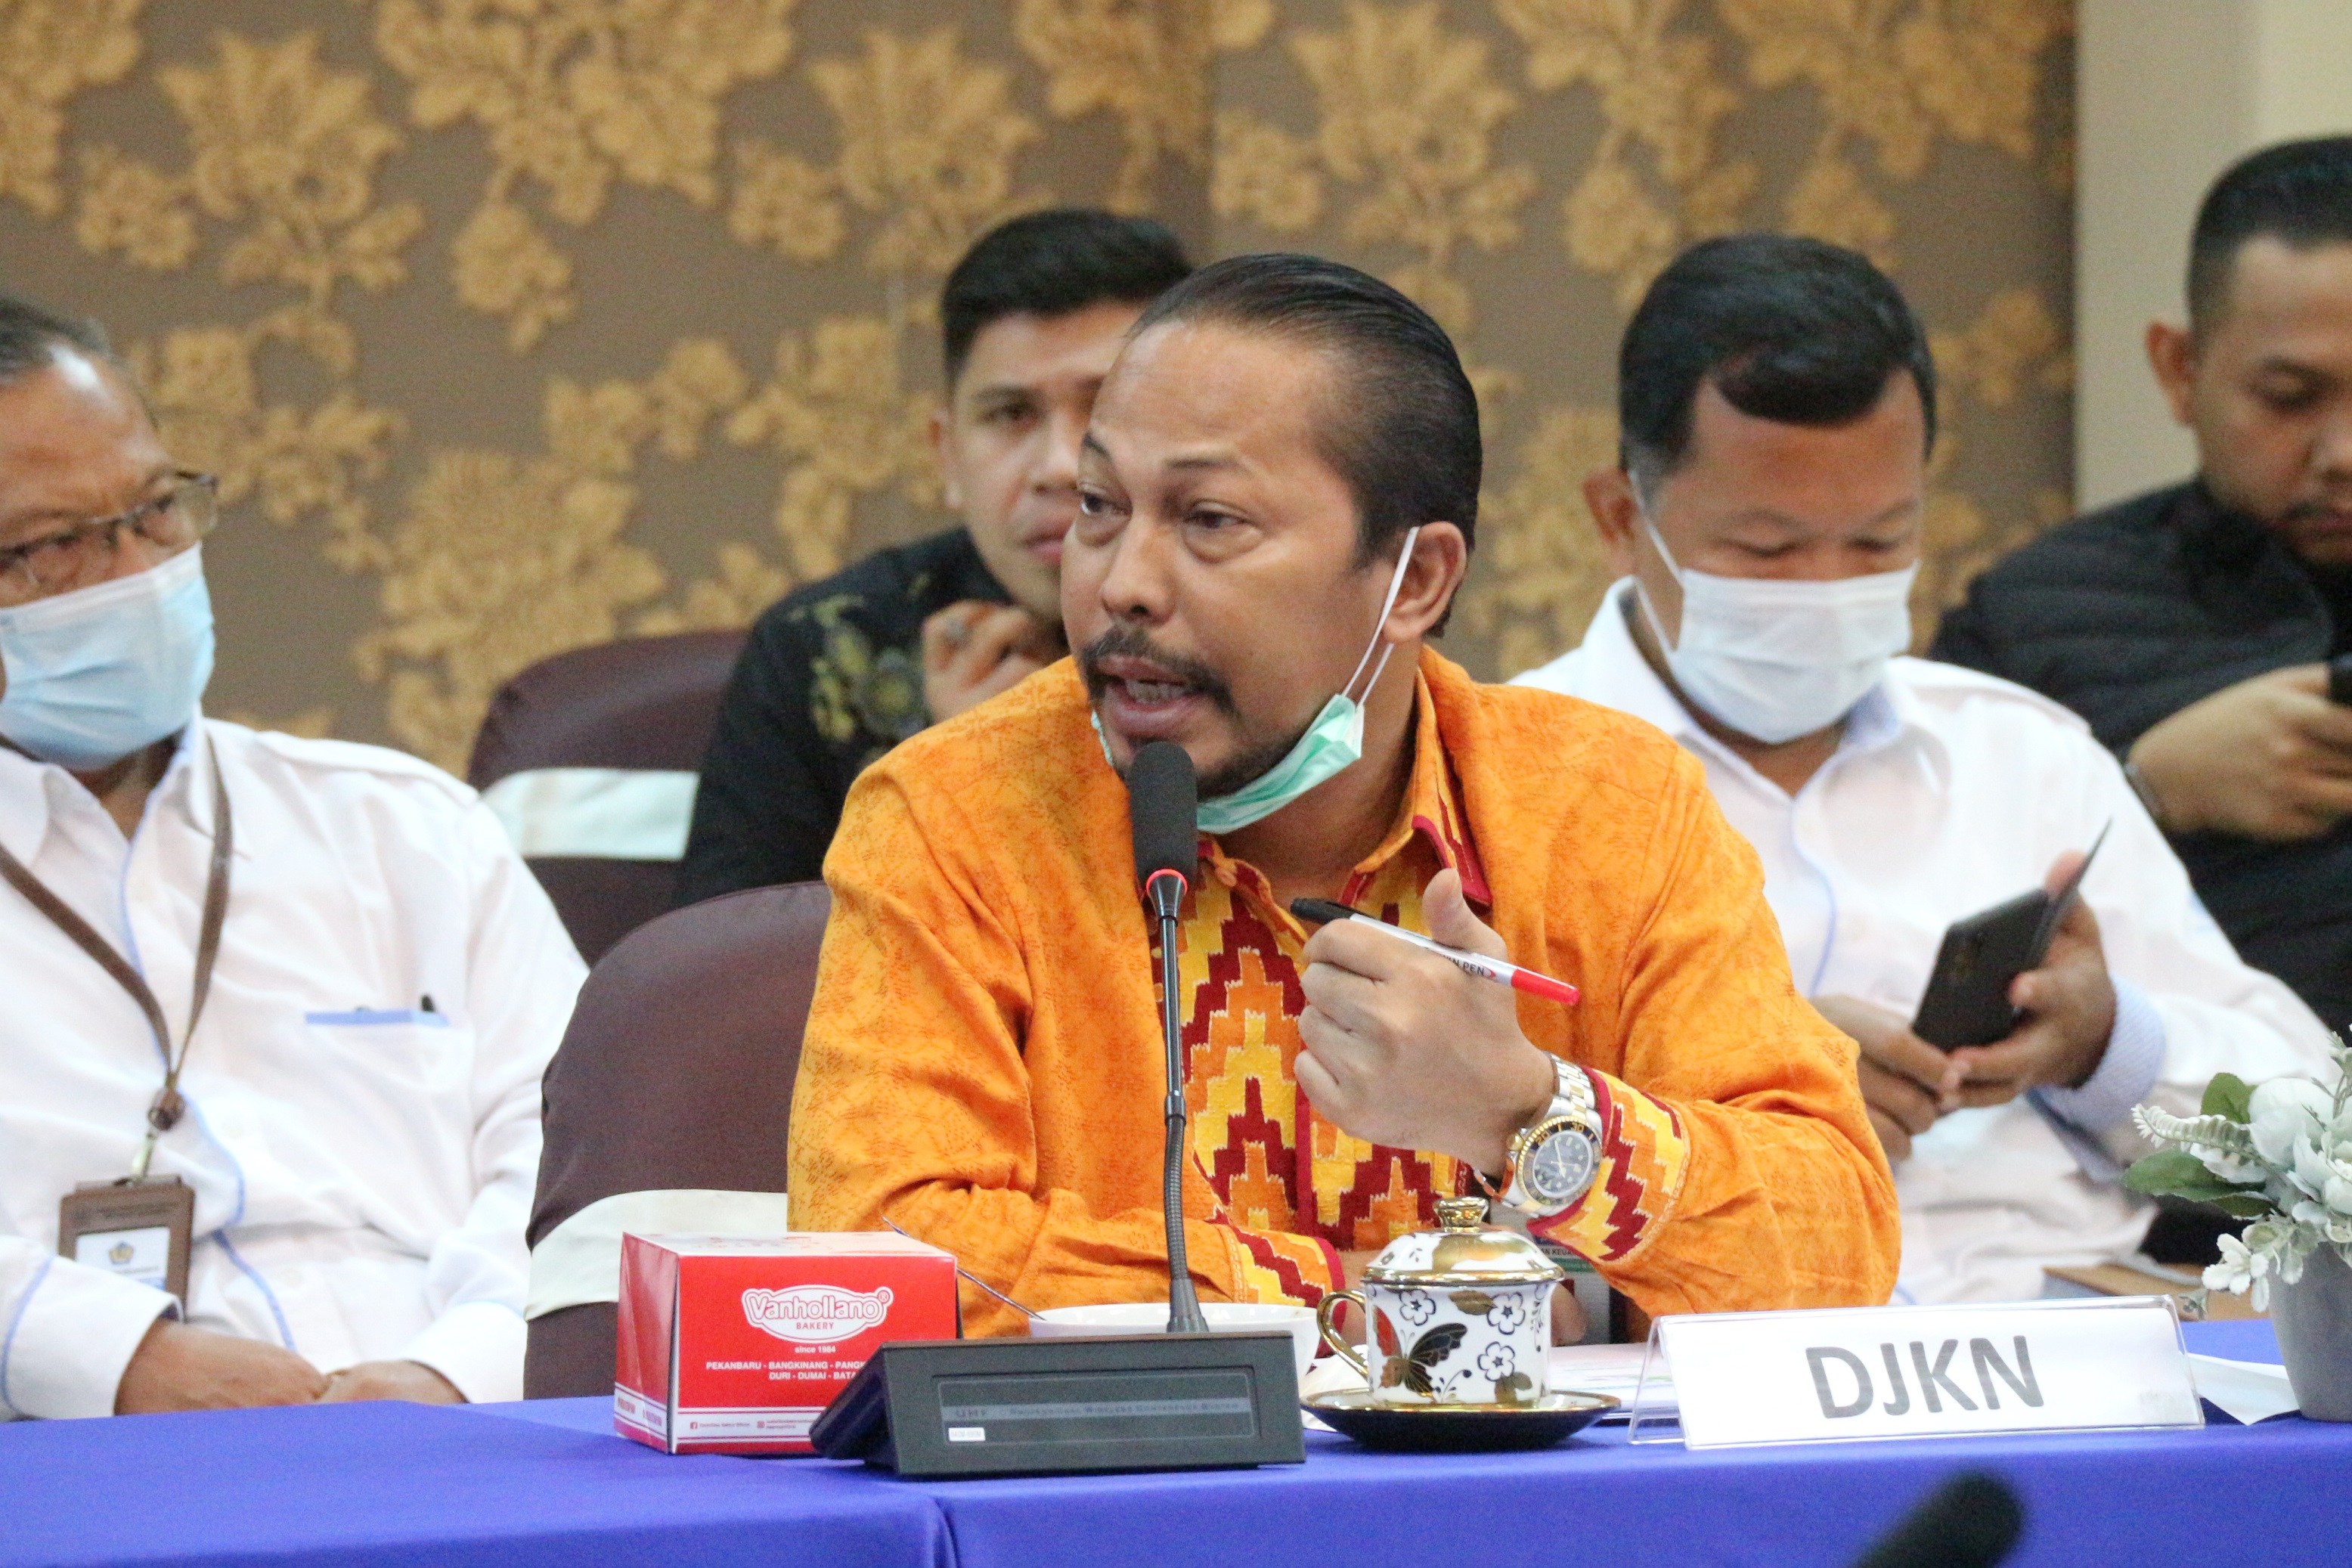 Kanwil DJKN RSK Paparkan PNBP dan Pengelolaan Aset ke Komisi XI Perwakilan Provinsi Riau